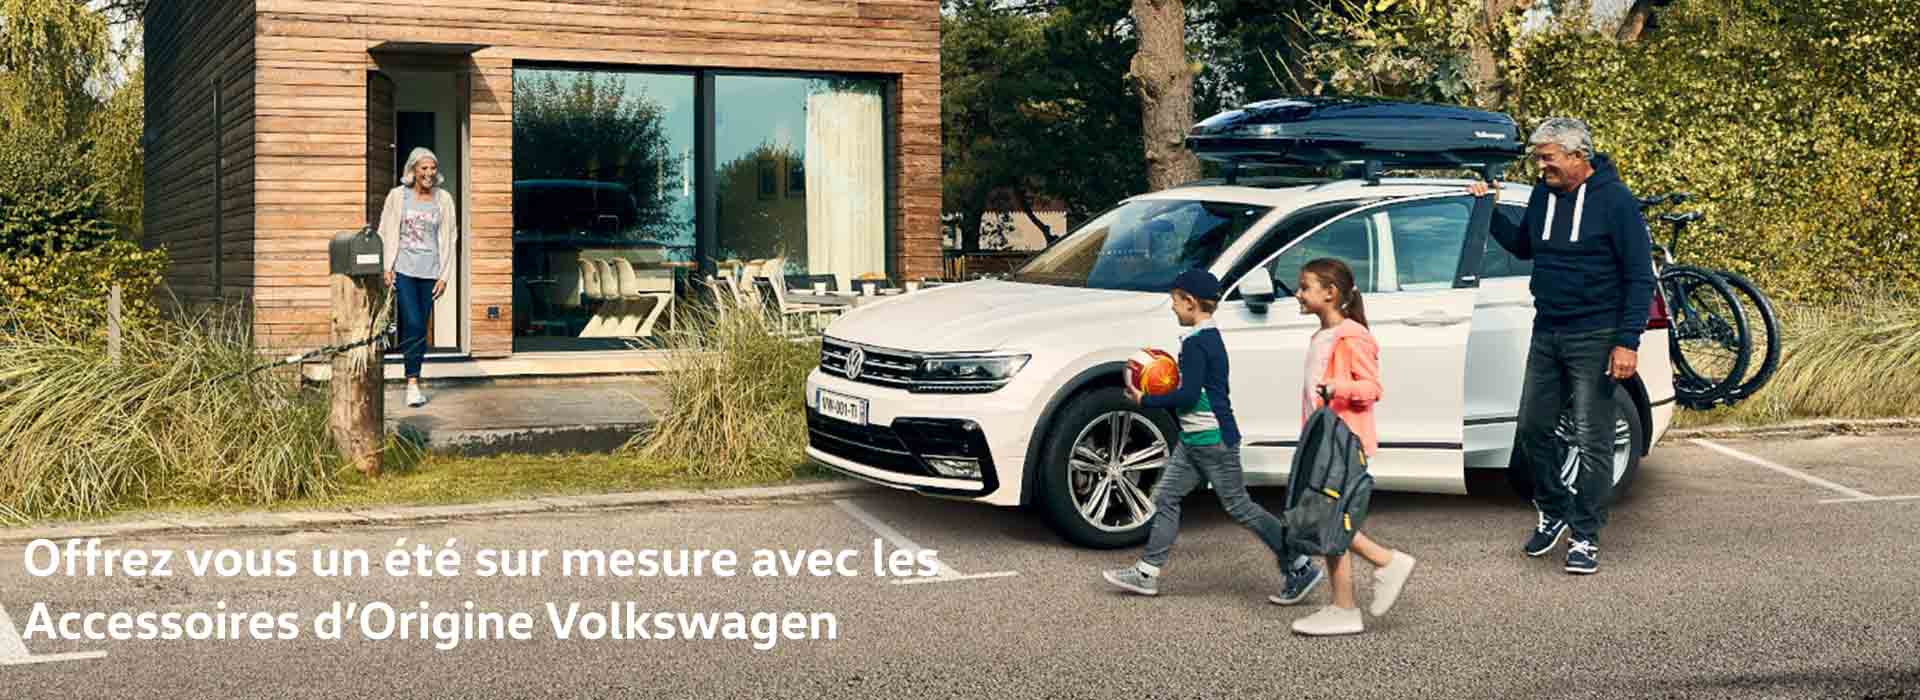 https://volkswagen-laval.fr/wp-content/uploads/2021/06/VW_Transport_003_web-Volkswagen-Laval.jpg